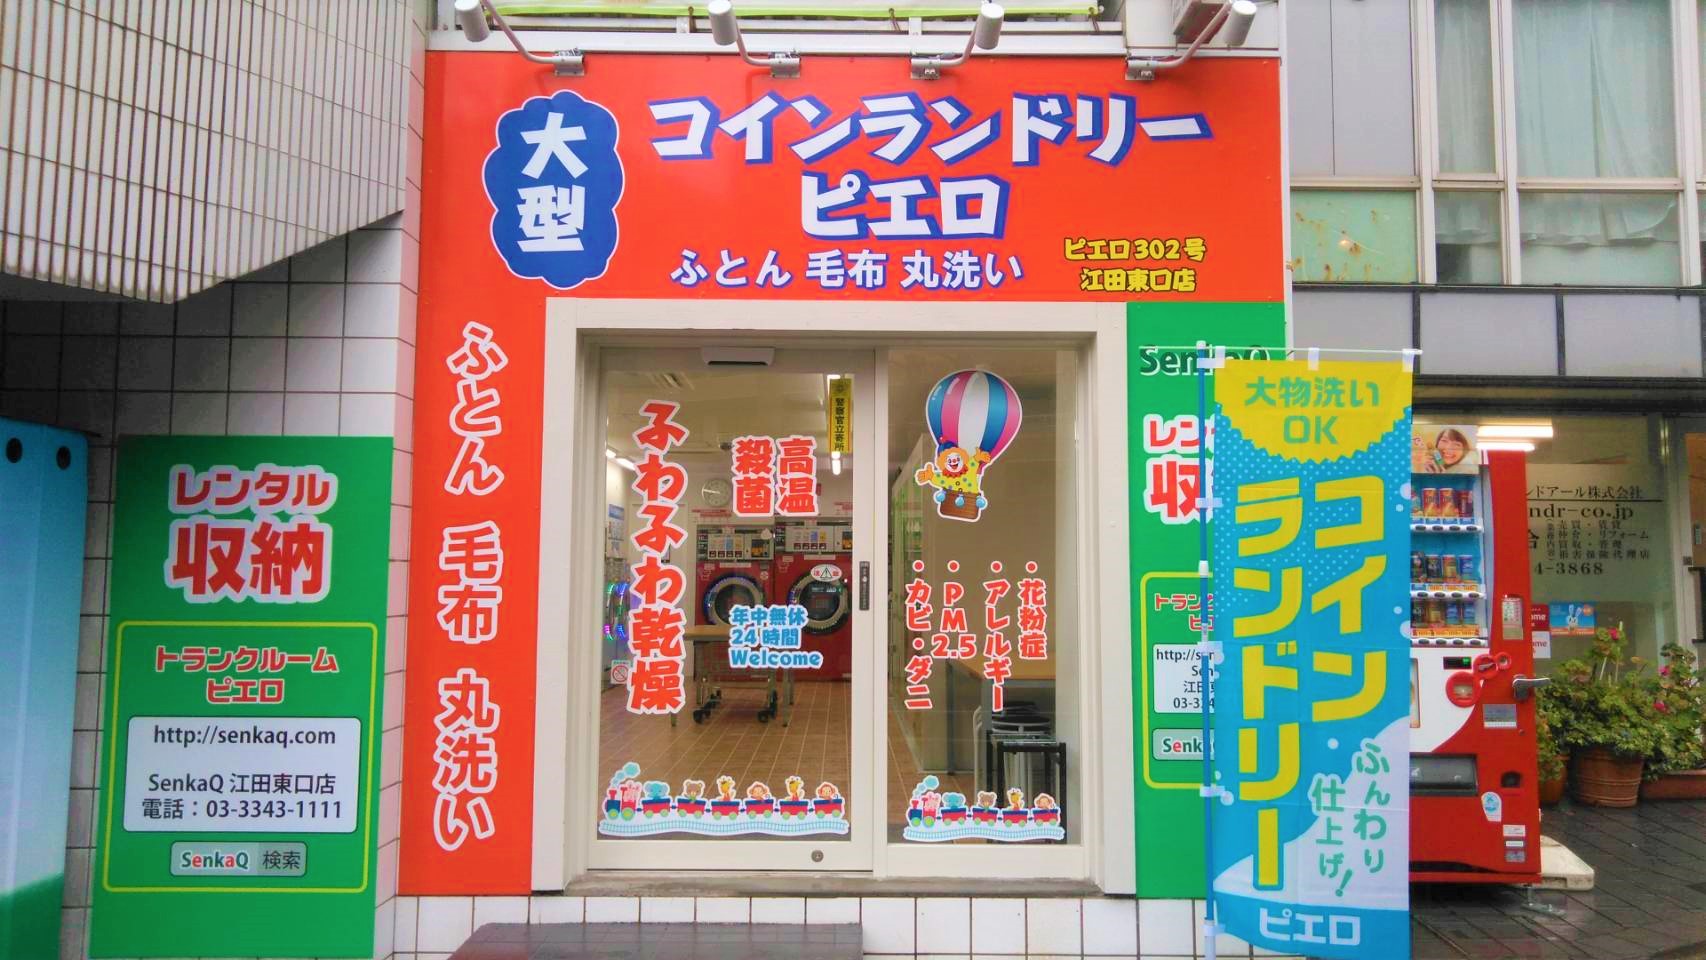 コインランドリー/ピエロ 302号 江田東口店の写真